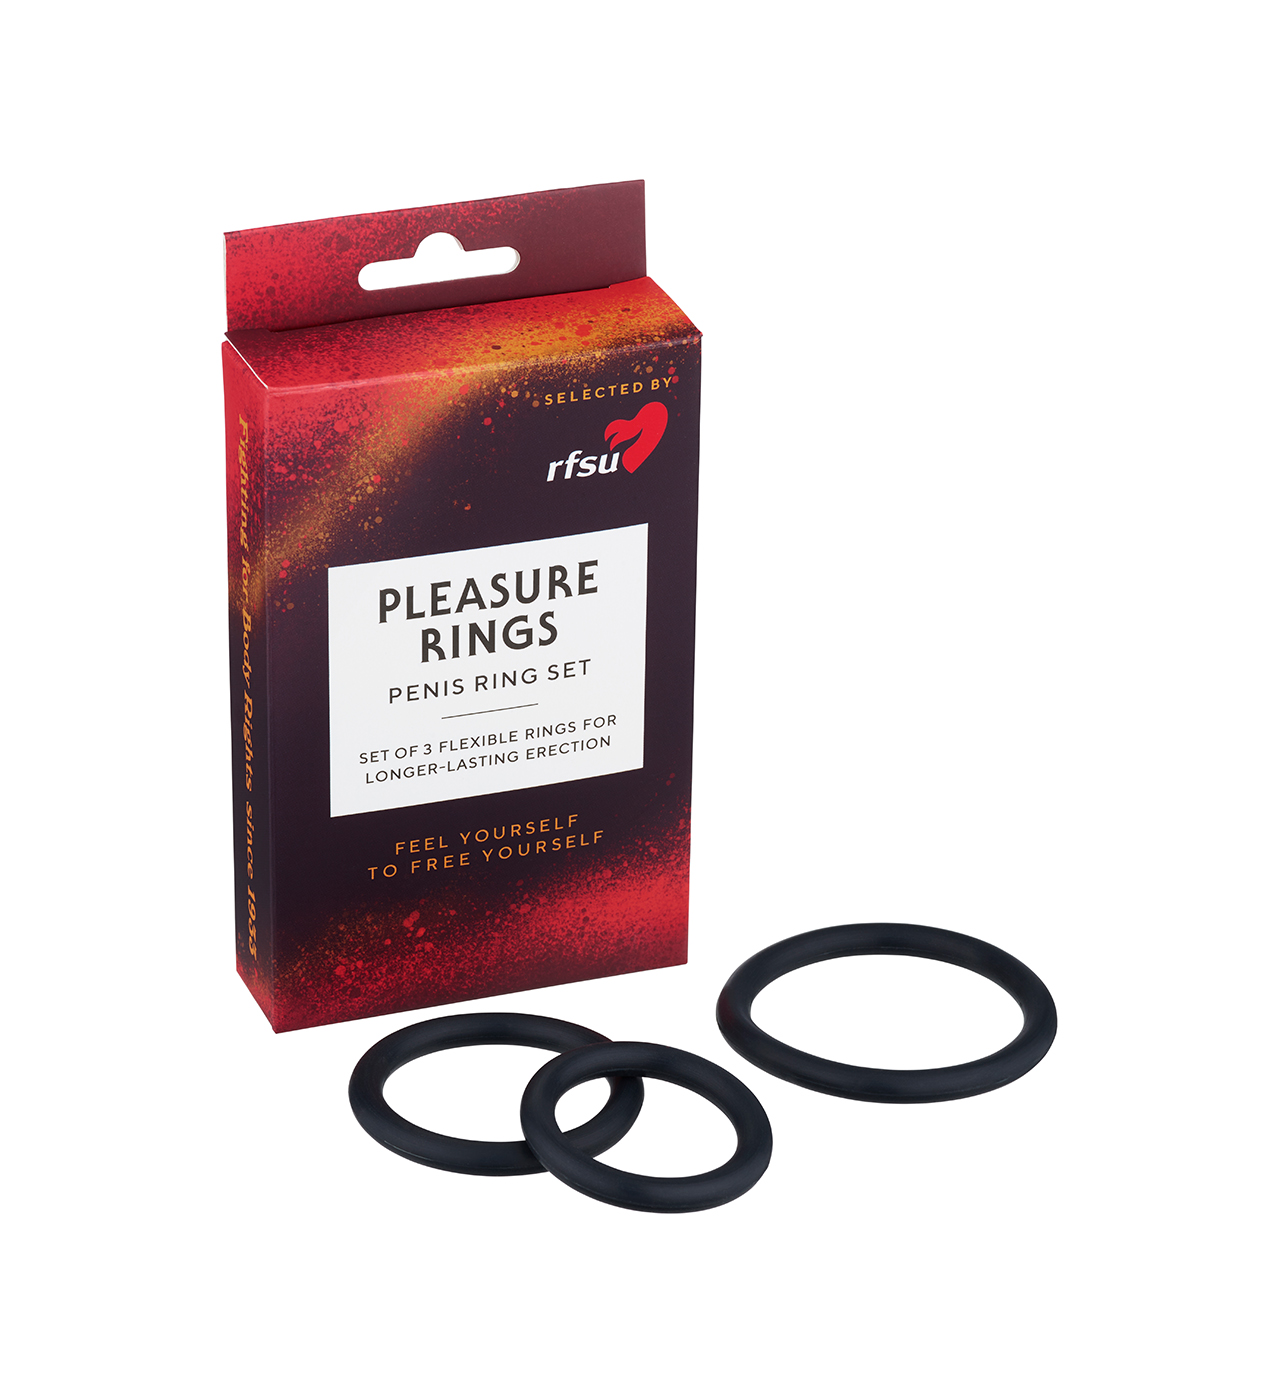 Pleasure Rings - 3 different sized penis rings  - RFSU